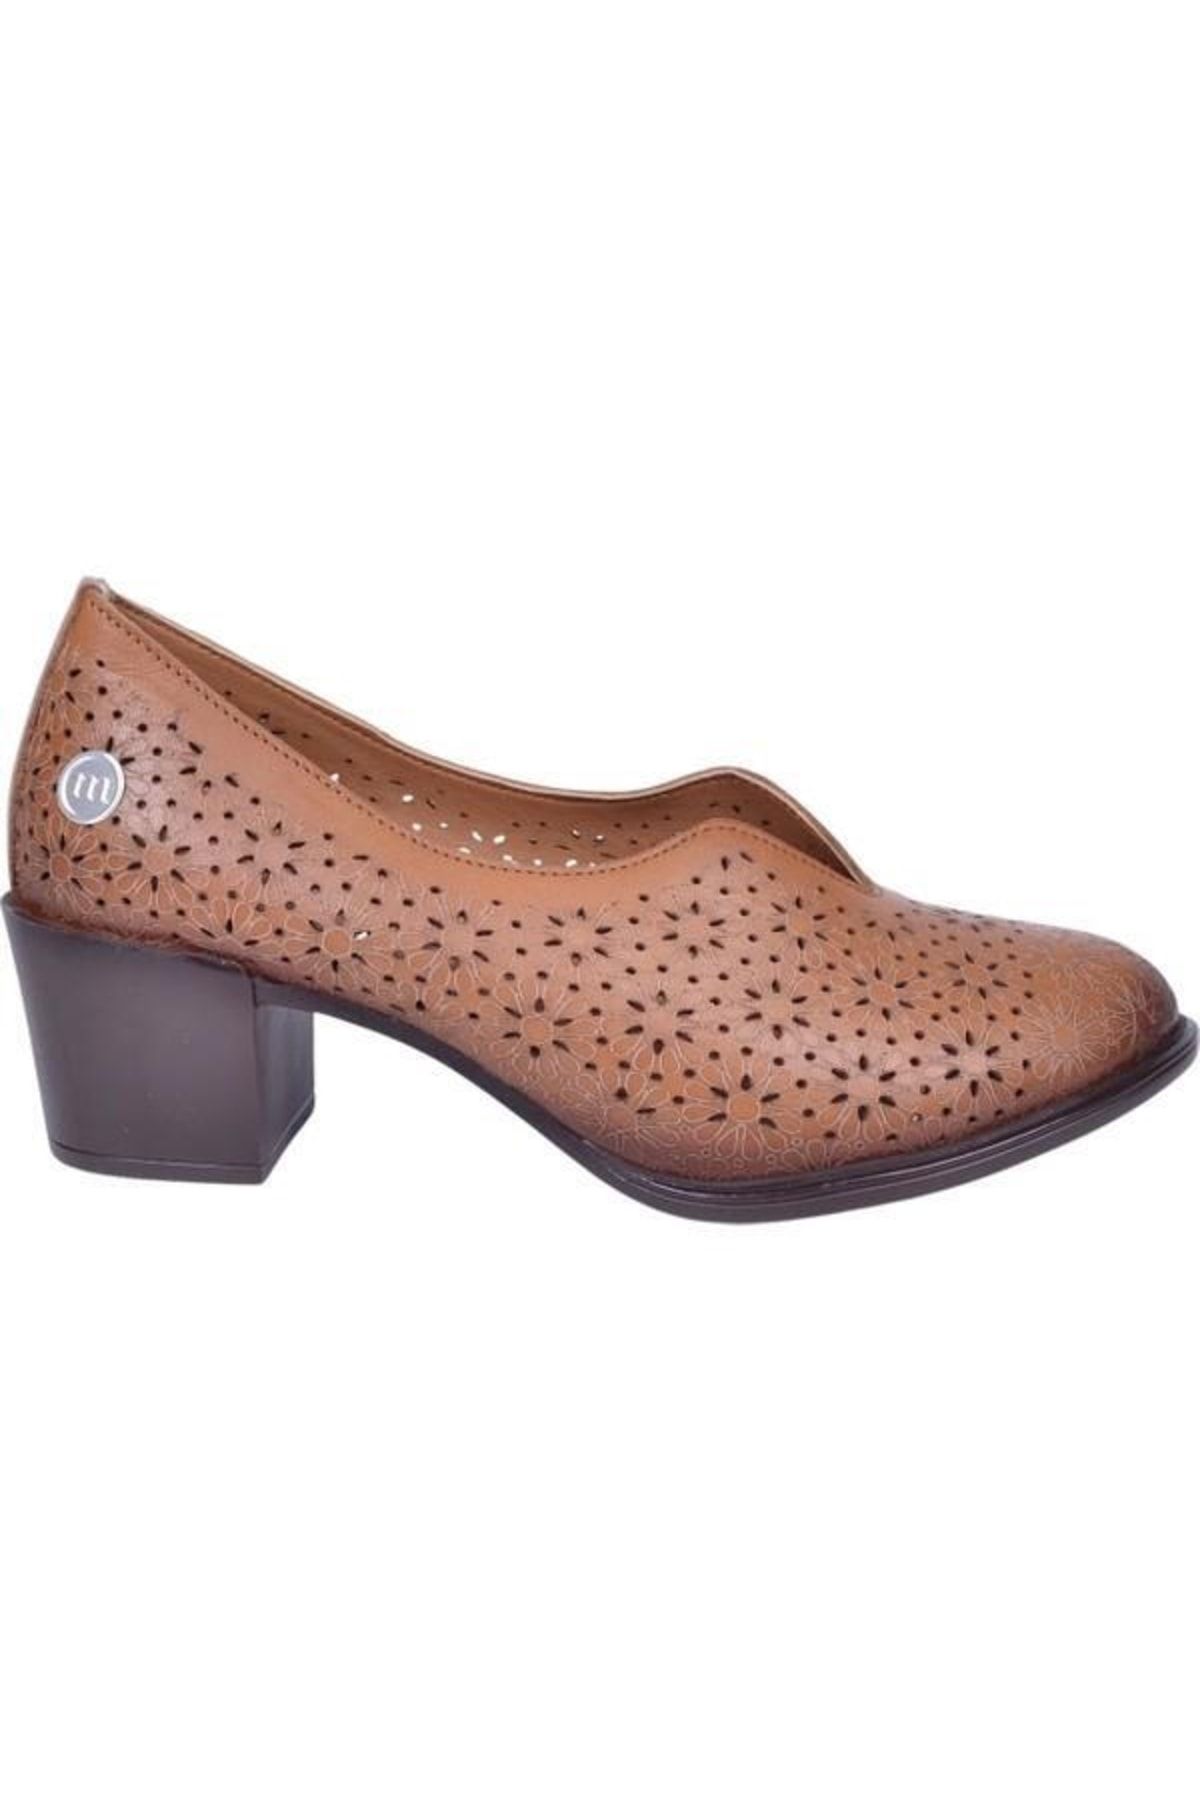 Mammamia D23ya-345 Topuklu Delikli Deri Kadın Ayakkabı